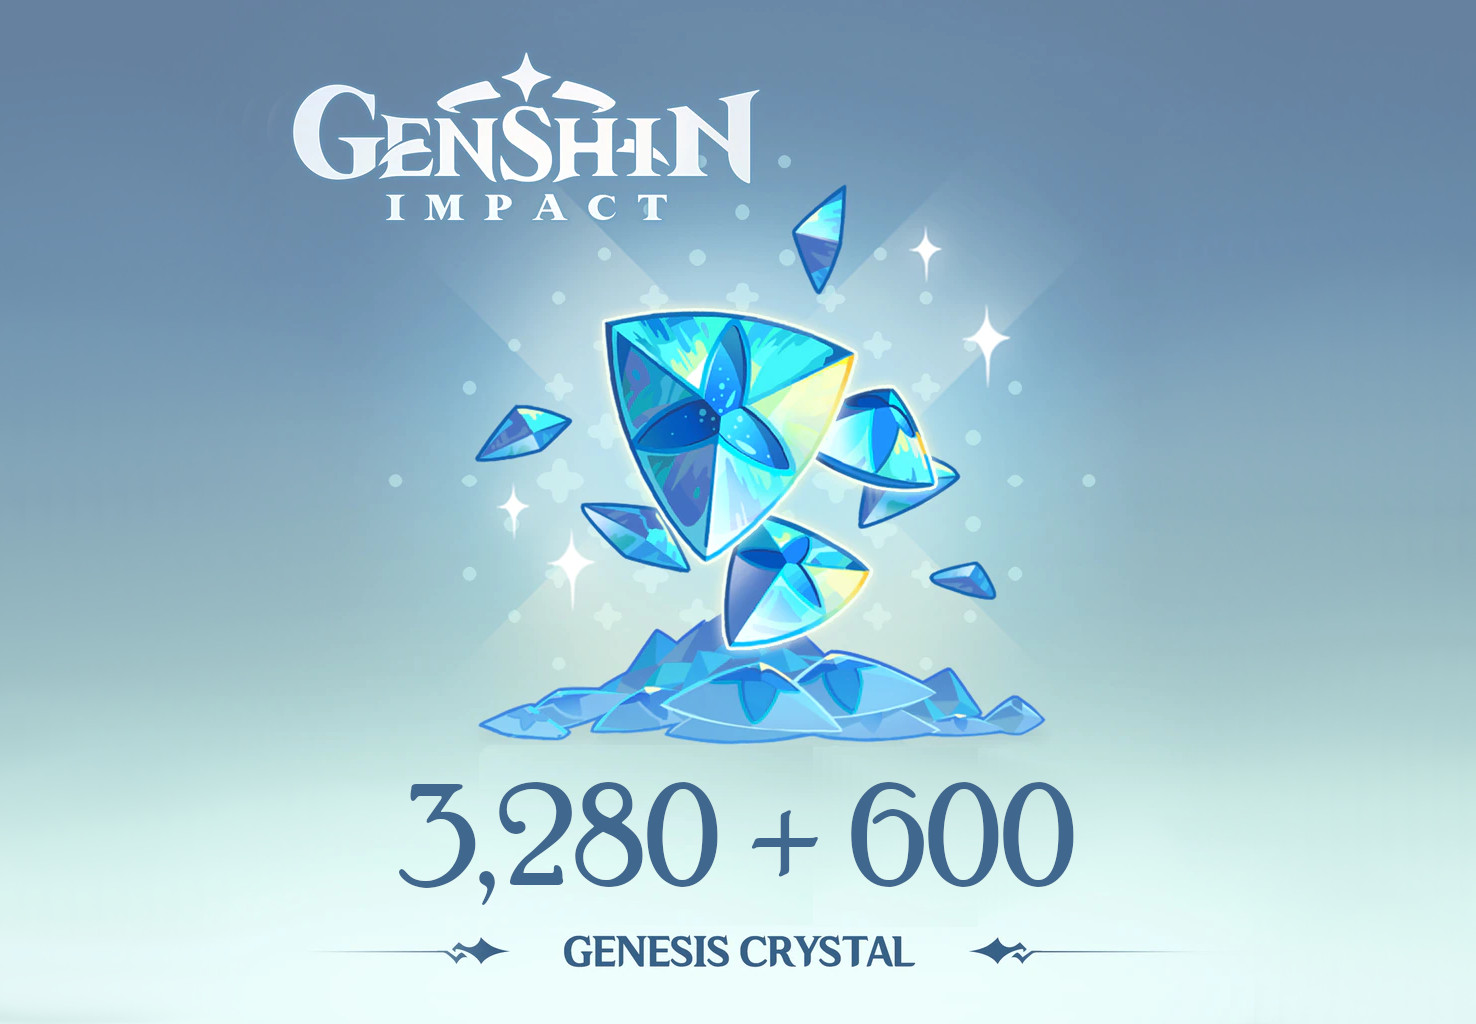 Genshin Impact - 3,280 + 600 Genesis Crystals Reidos Voucher [USD 53.39]